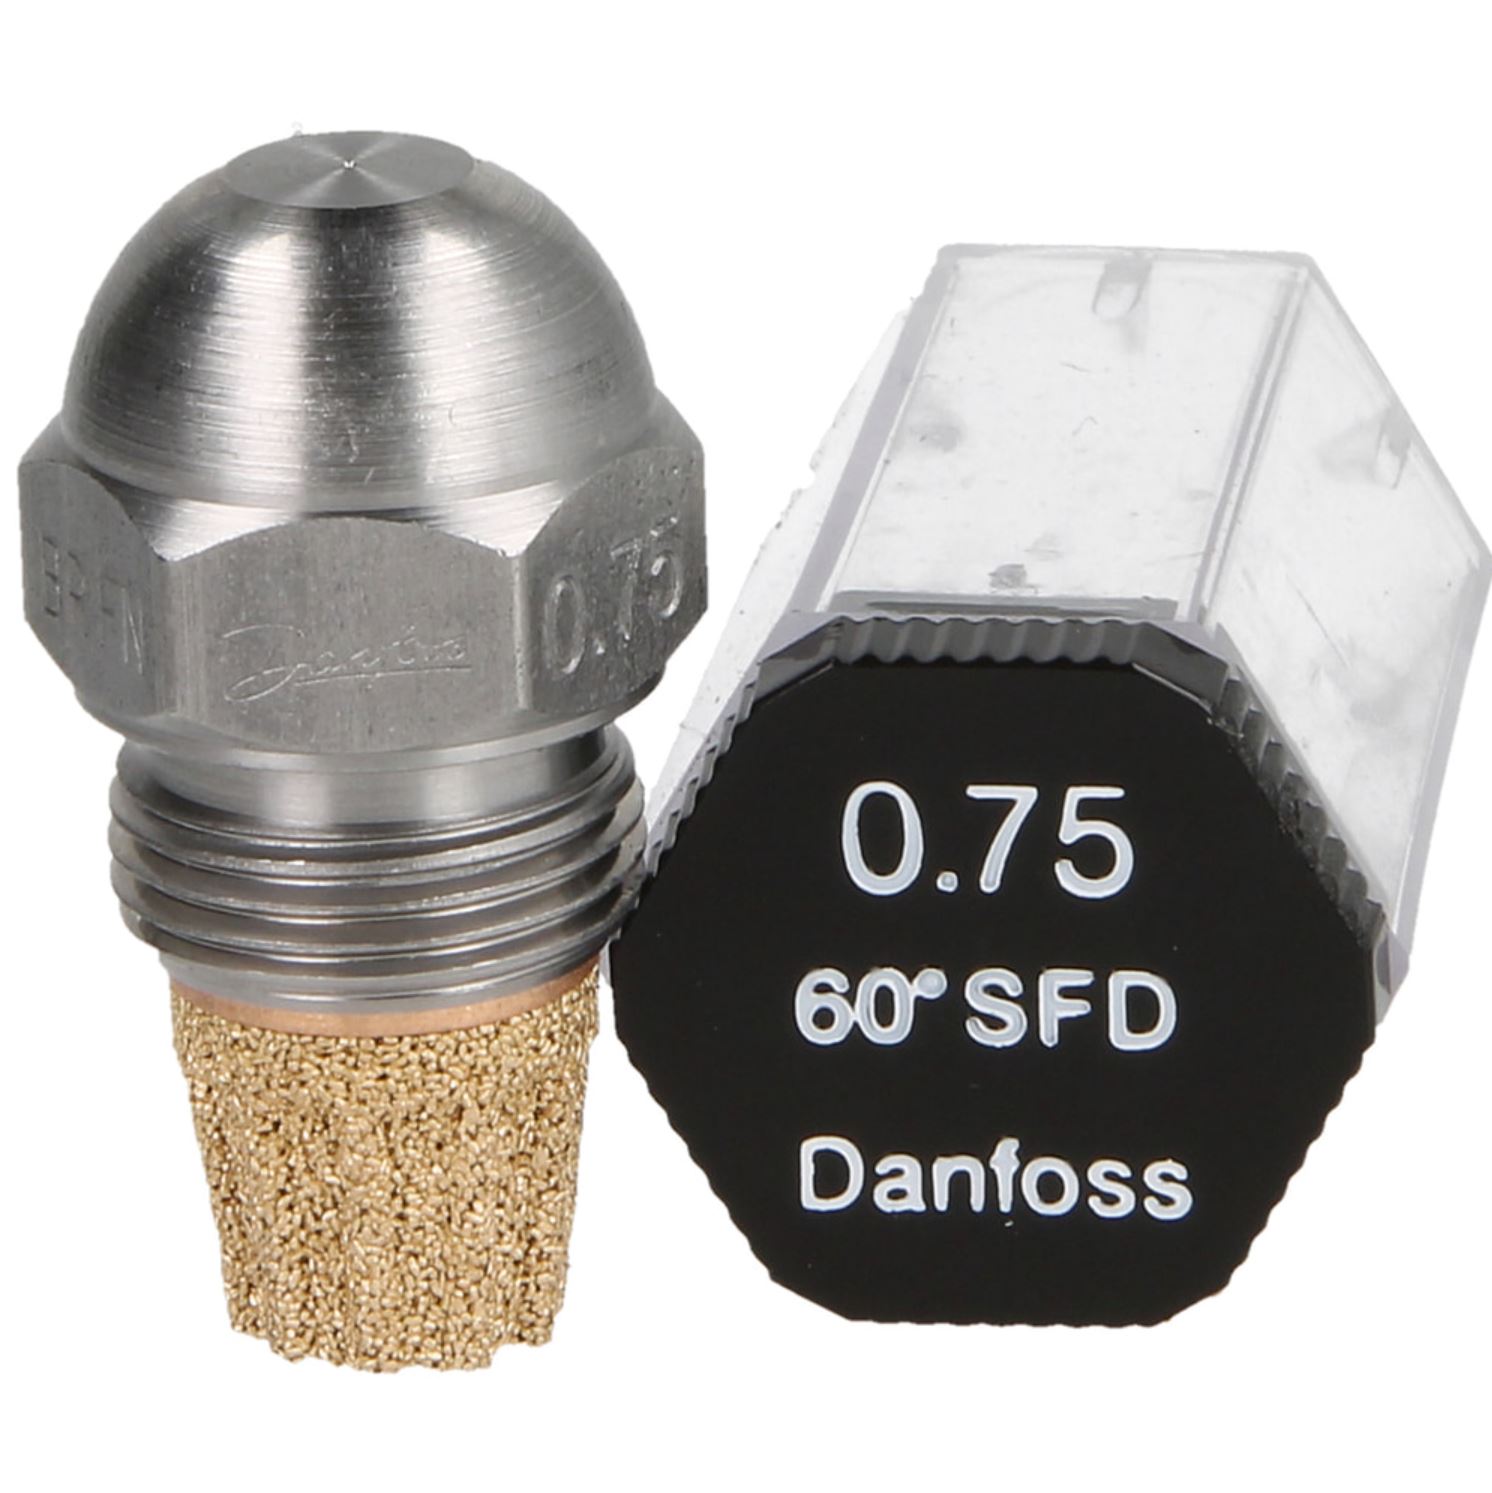 Danfoss-Öldüse 0,75 60°SF-D